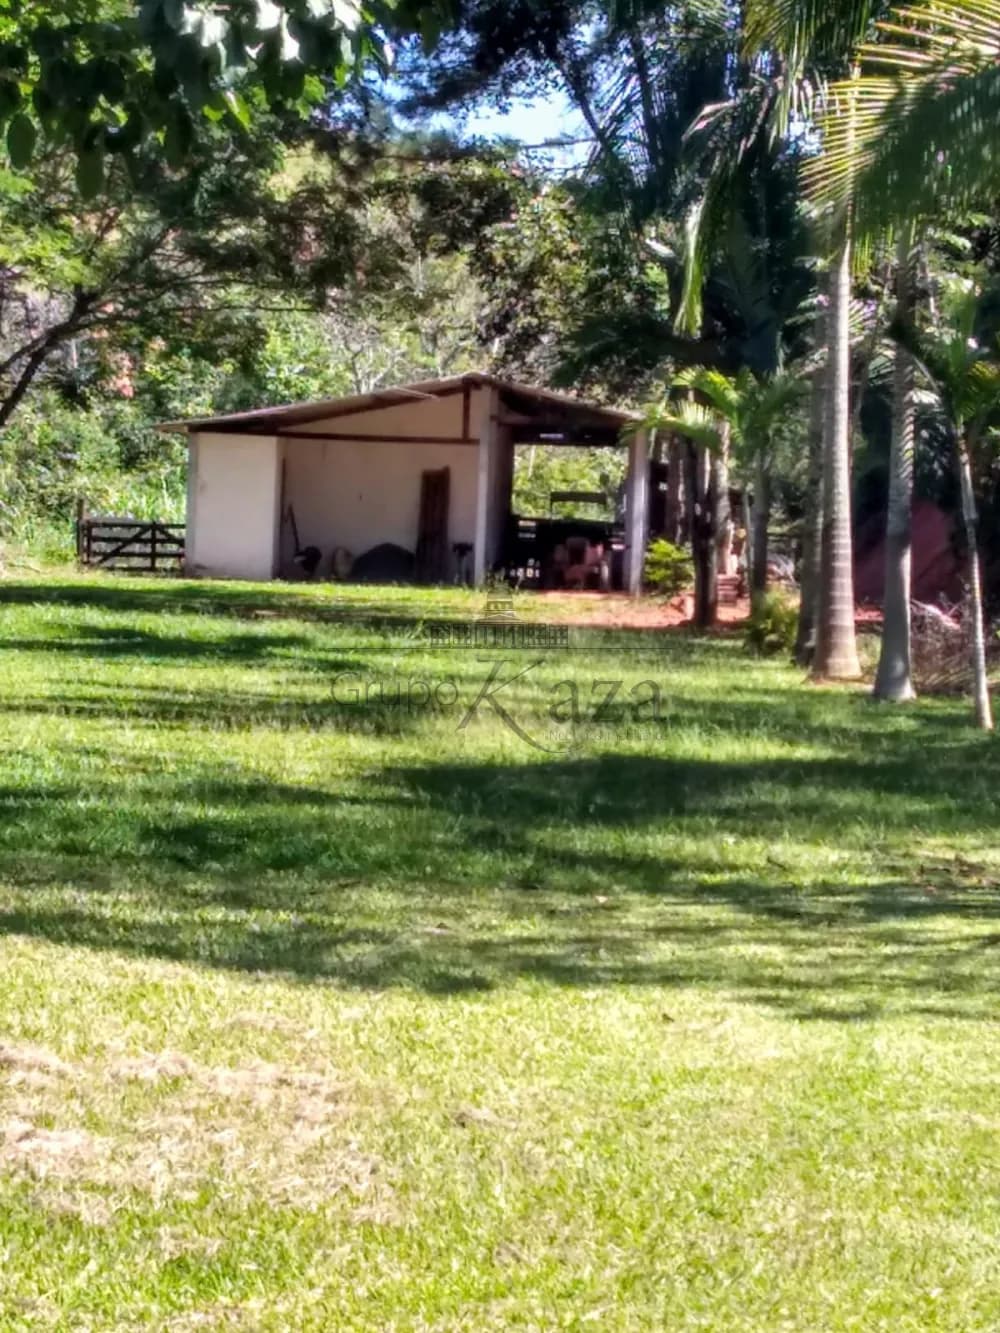 Foto 11 de Rural Chácara em Condomínio Residencial Jaguari - Área 5, São José dos Campos - imagem 11